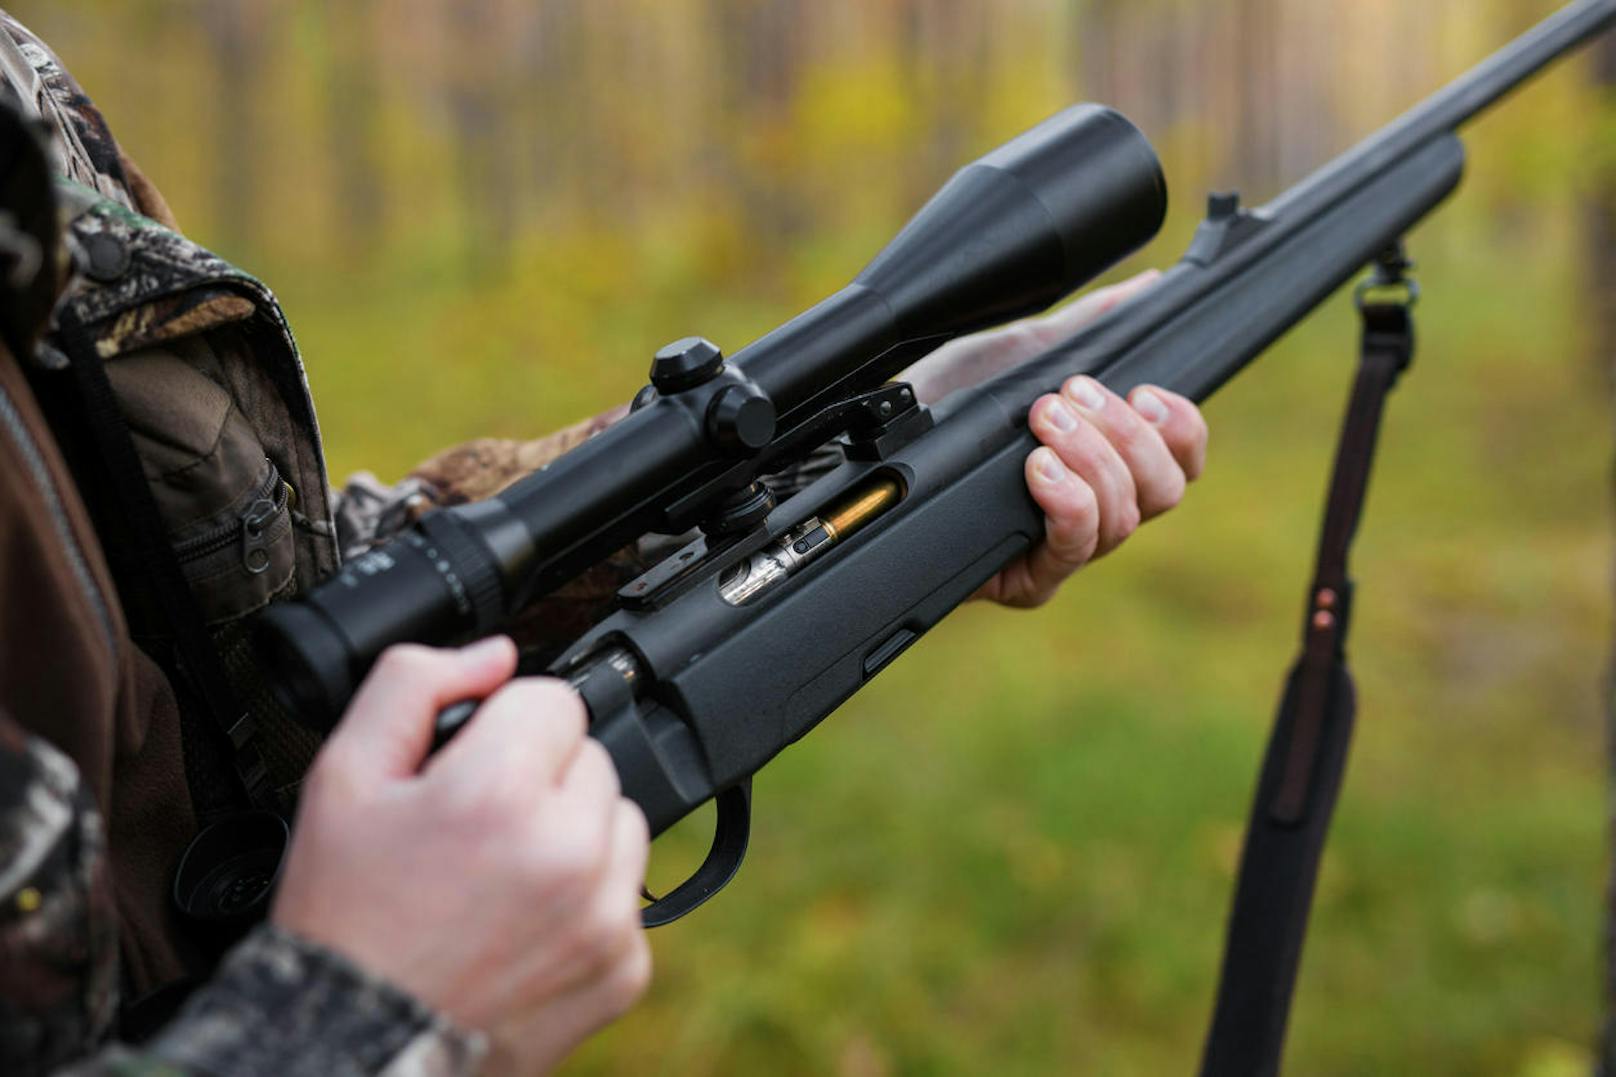 Zusätzlich werden noch Schusswaffen für Jagd und Schießsport unterschieden.